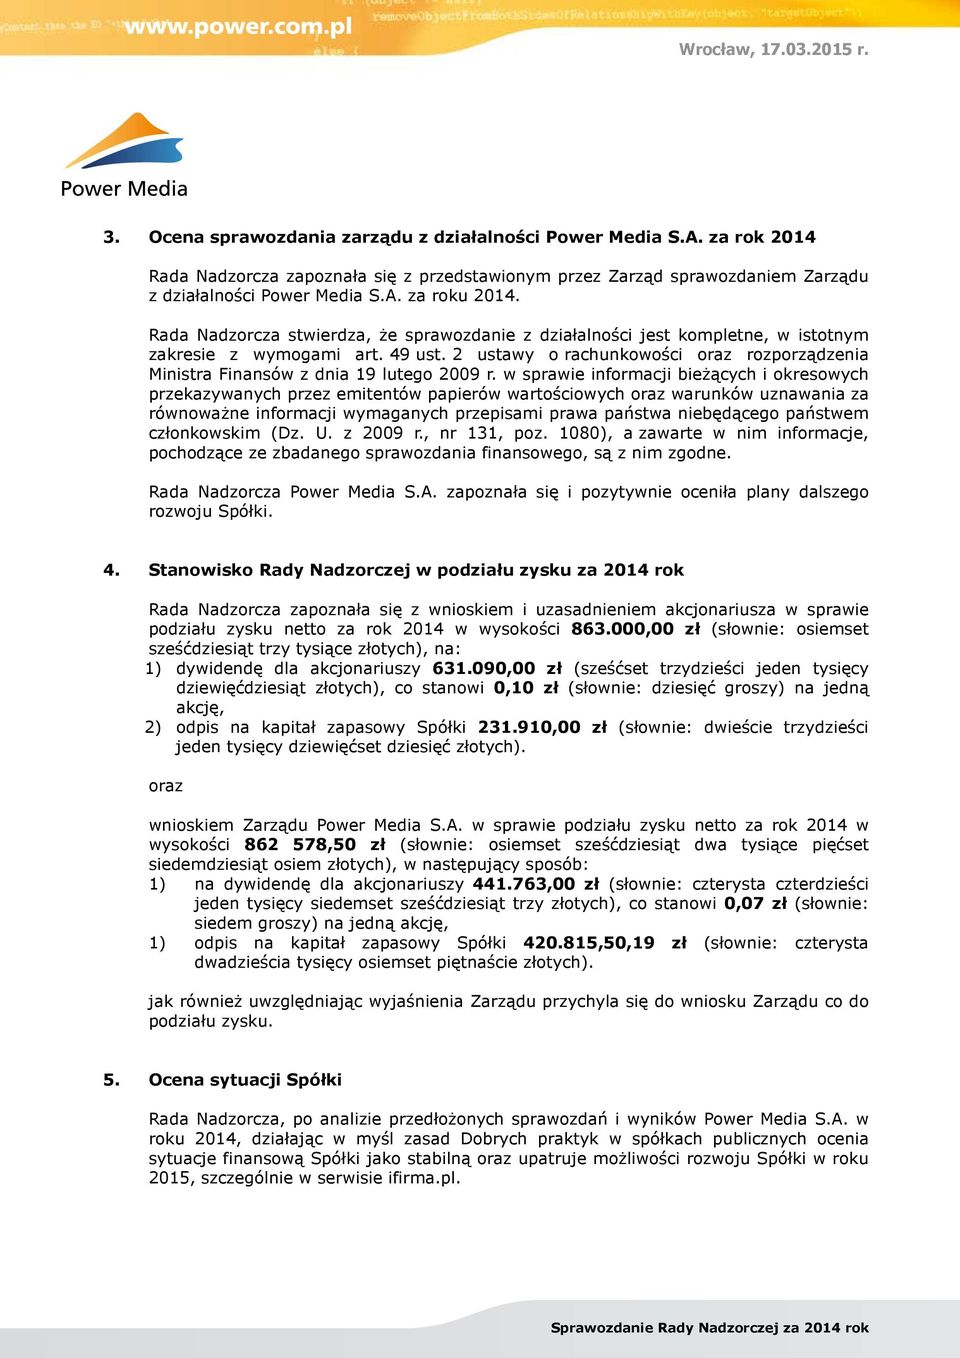 2 ustawy o rachunkowości oraz rozporządzenia Ministra Finansów z dnia 19 lutego 2009 r.